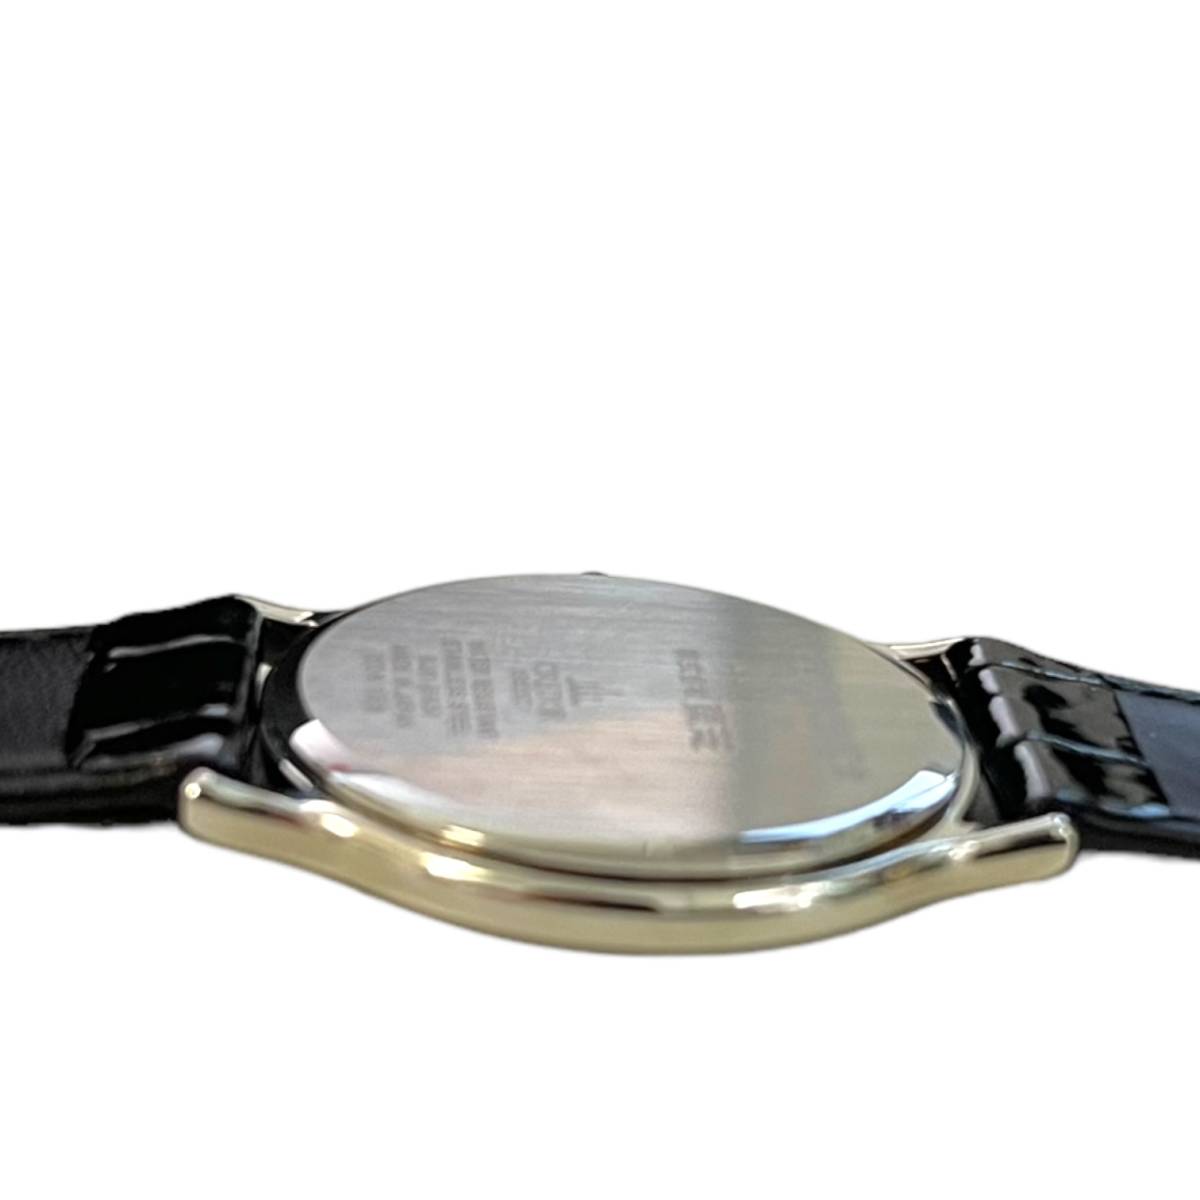 【中古品】SEIKO CREDOR セイコー クレドール 8J81-6A30 東芝25年勤続表彰記念 クオーツ メンズ腕時計 箱あり hiL2126RO_画像4